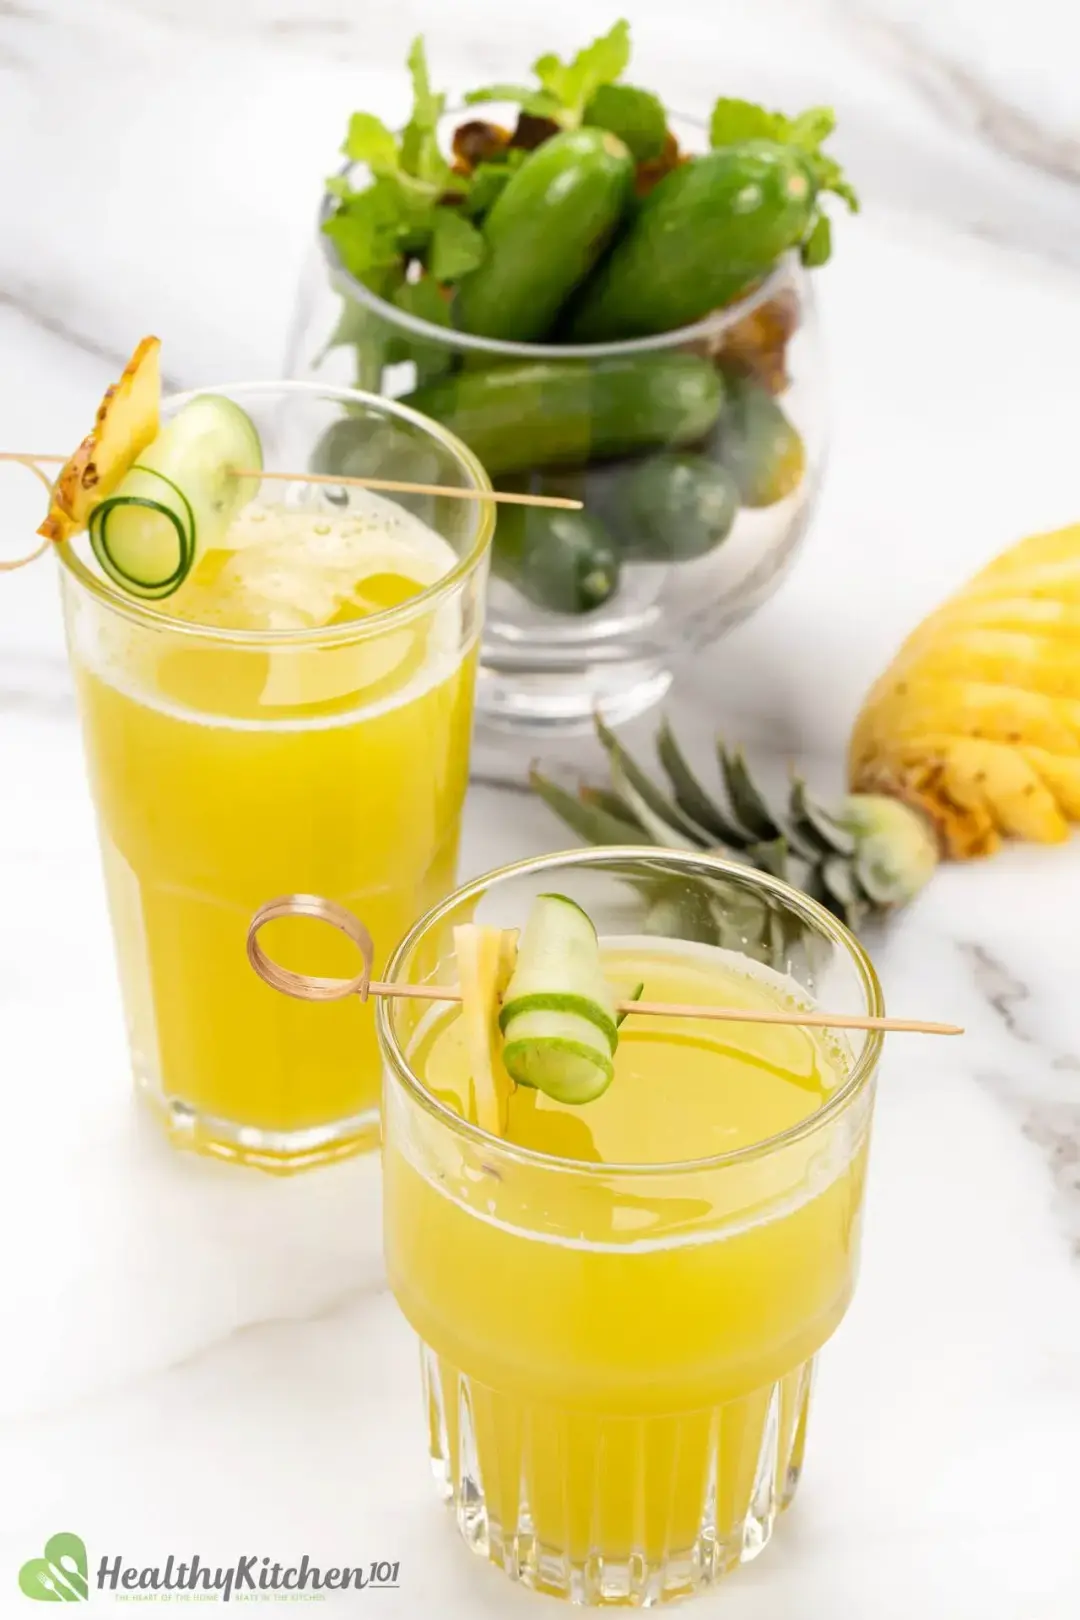 Pineapple cucumber juice